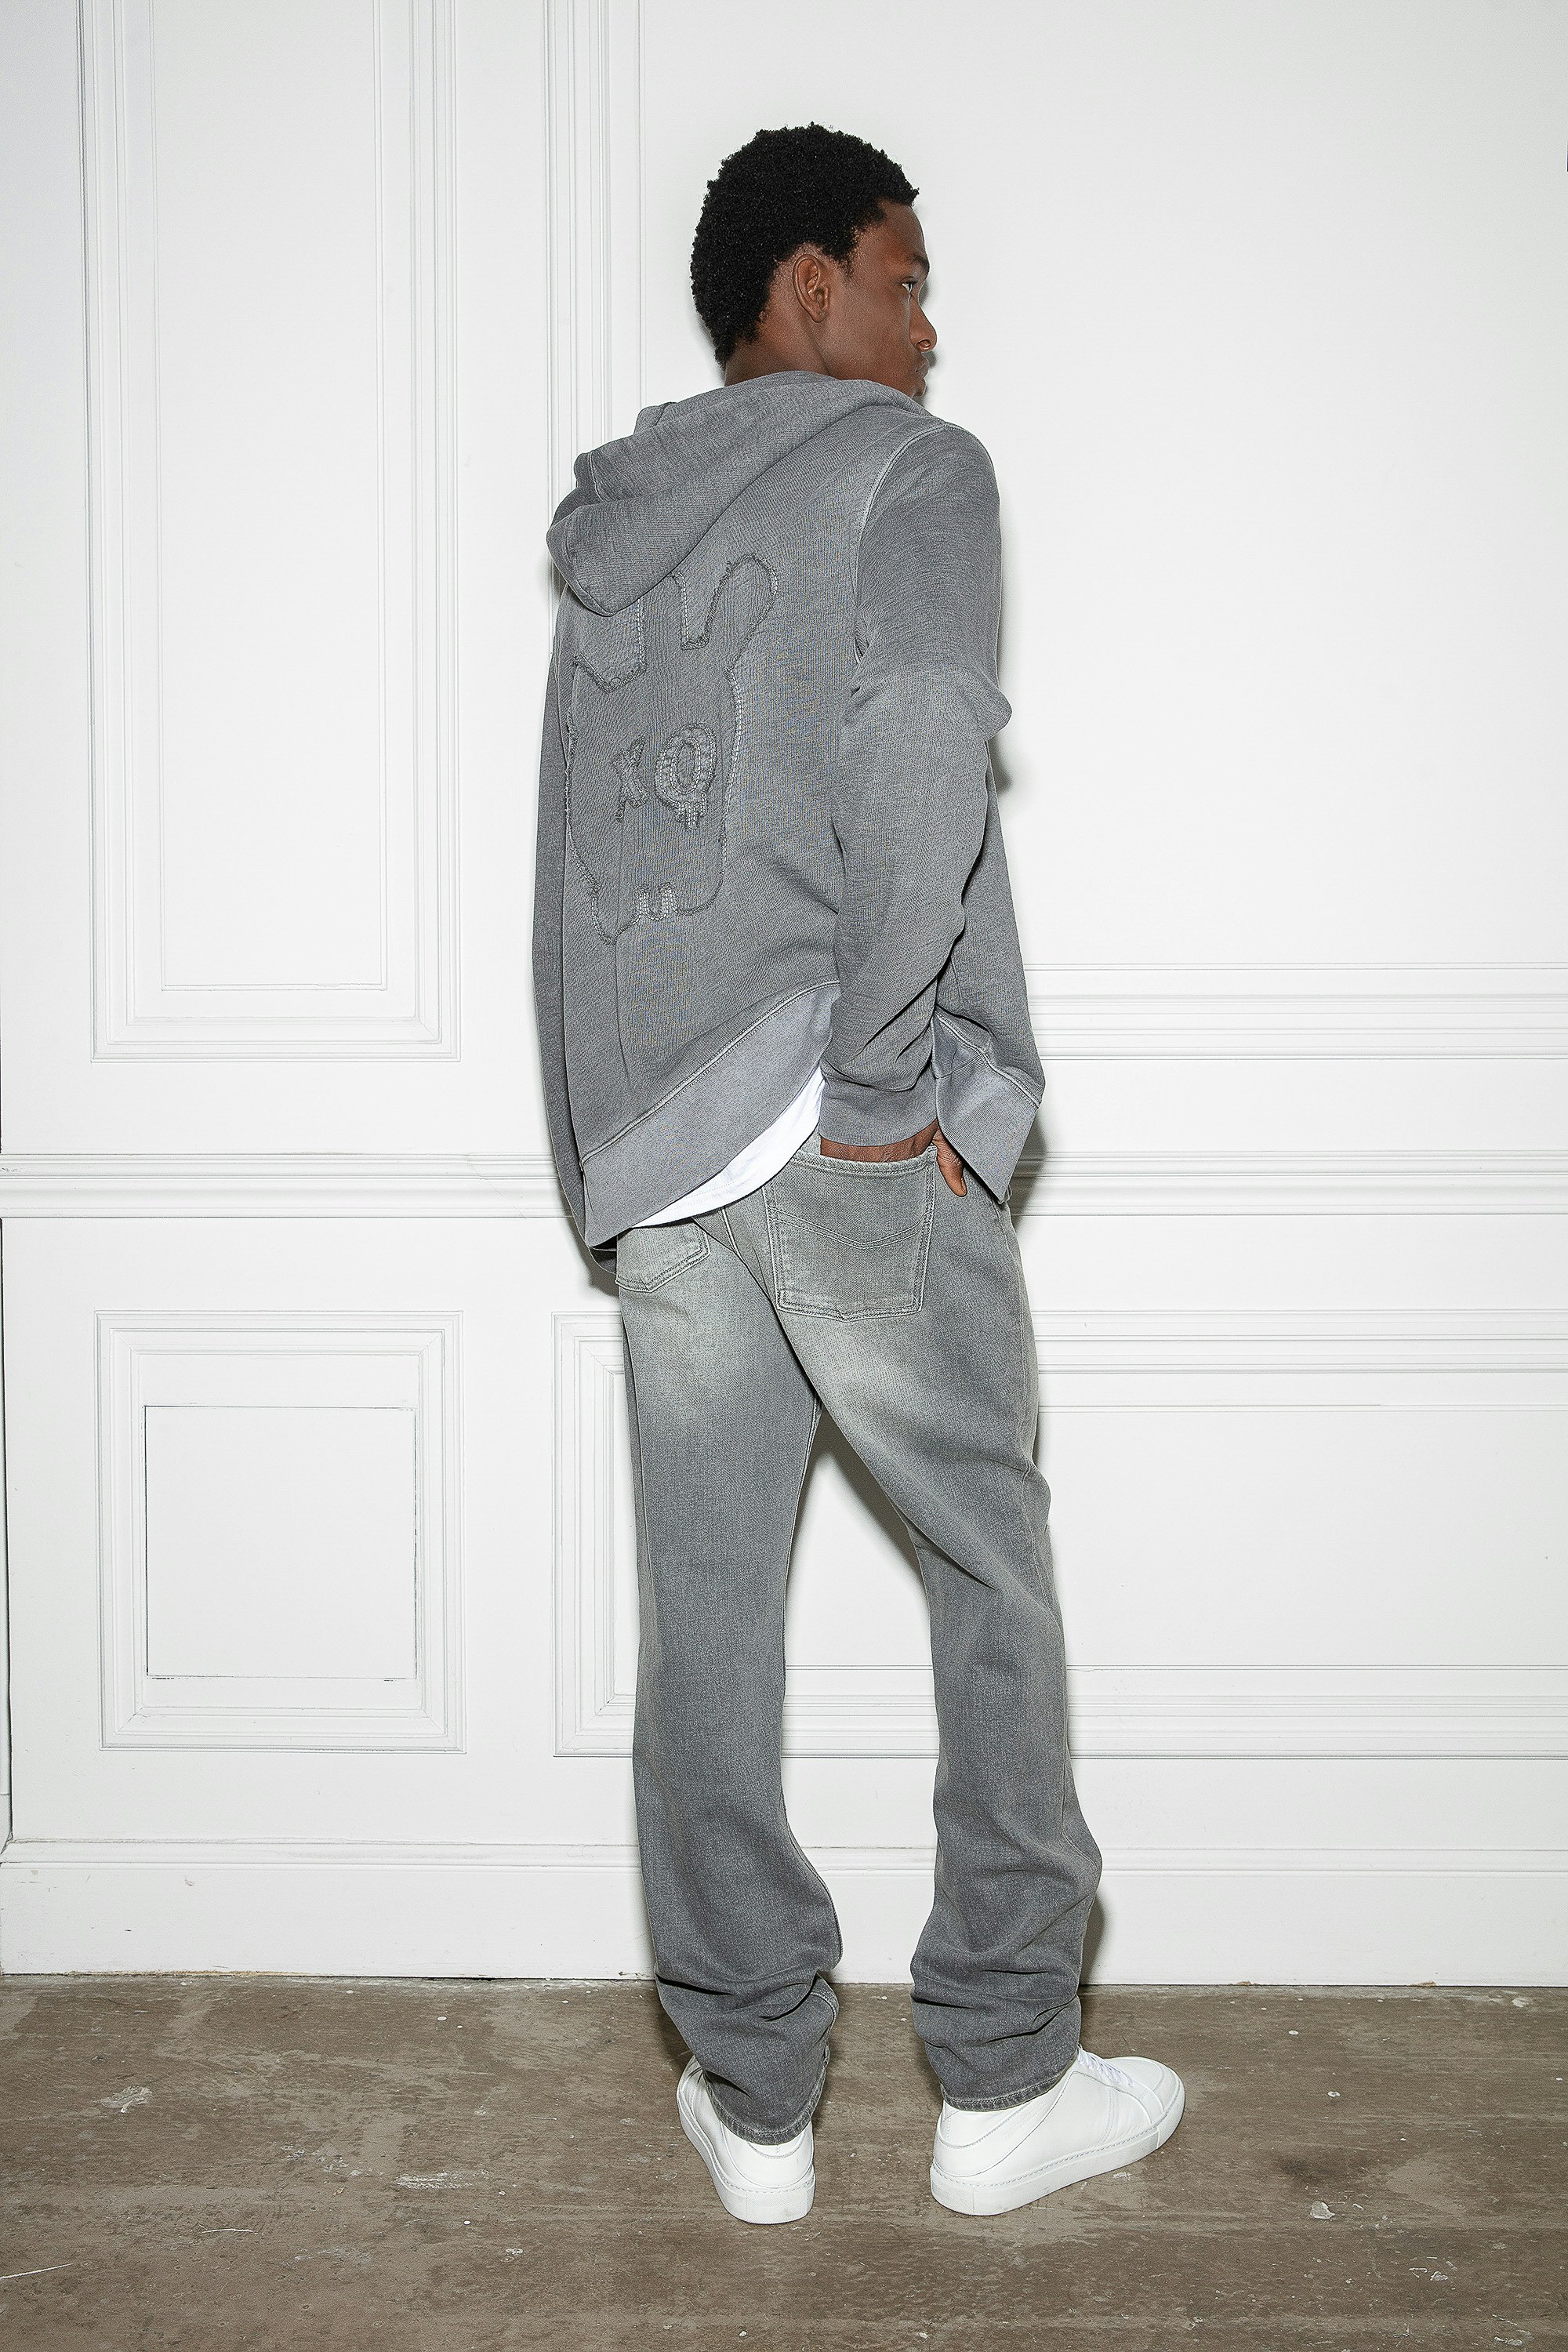 Sudadera Alex Skull - Sudadera gris de felpa de algodón con capucha y cremallera, bolsillos y parche Skull XO.